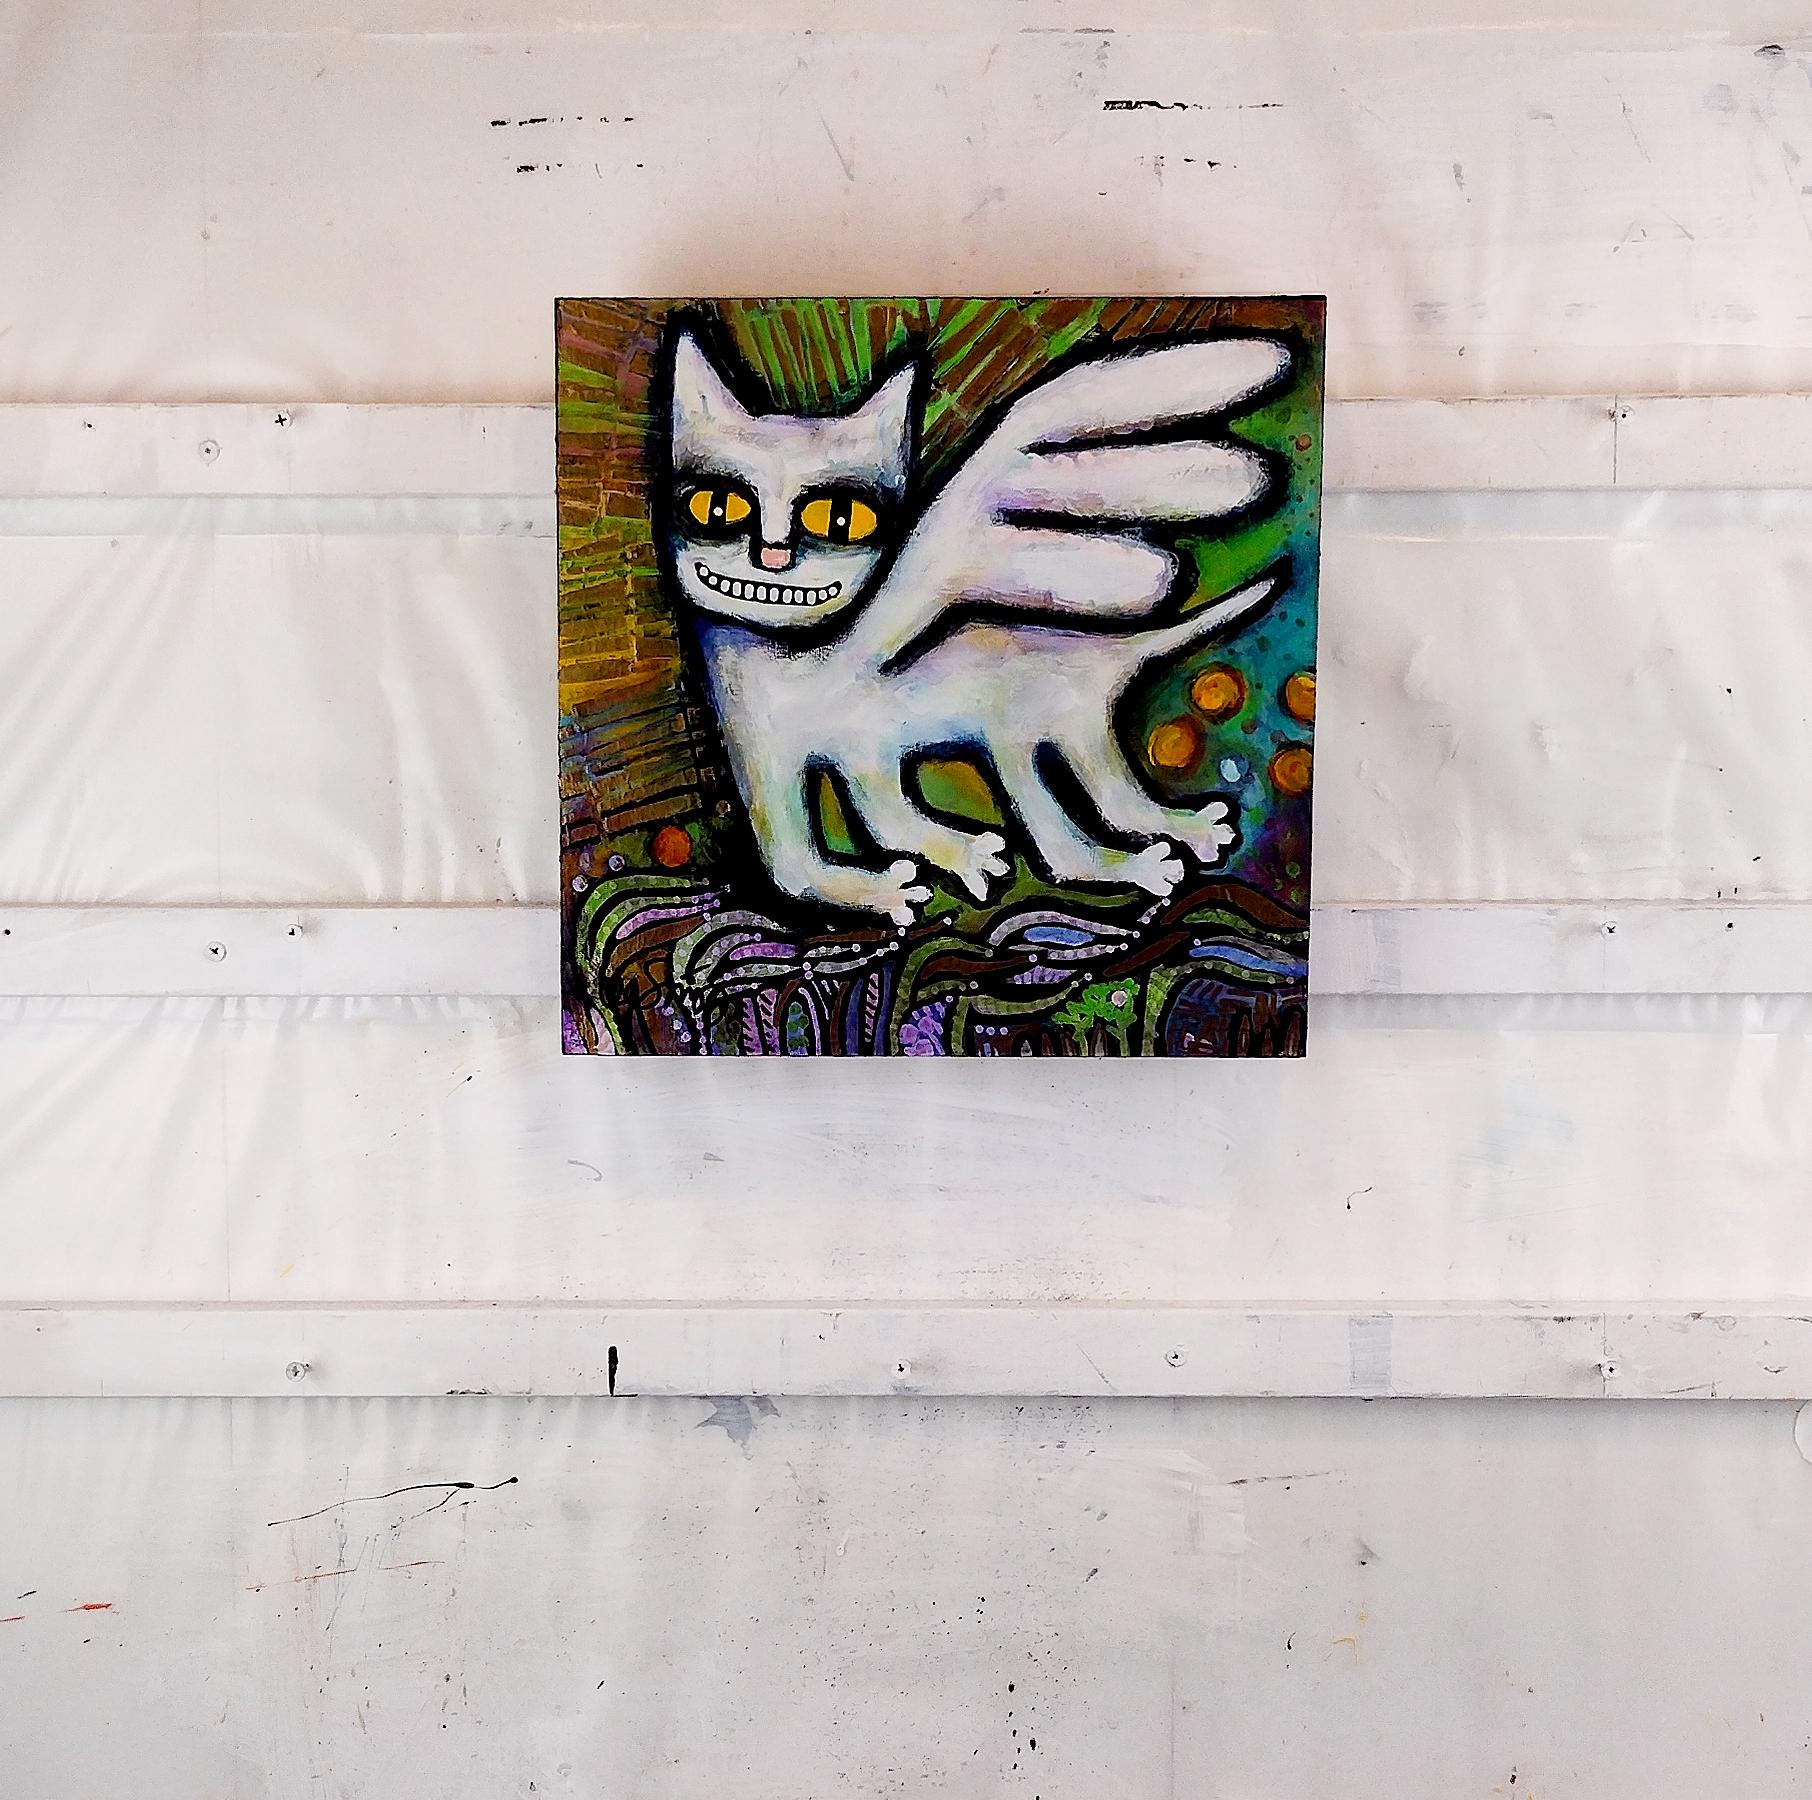 <p>Commentaires de l'artiste<br>Un chat aux ailes blanches survole une forêt en route vers le paradis. Il arbore un sourire joyeux et des yeux pétillants. Les teintes vertes éclatantes contrastent avec la peinture métallique texturée et les contours